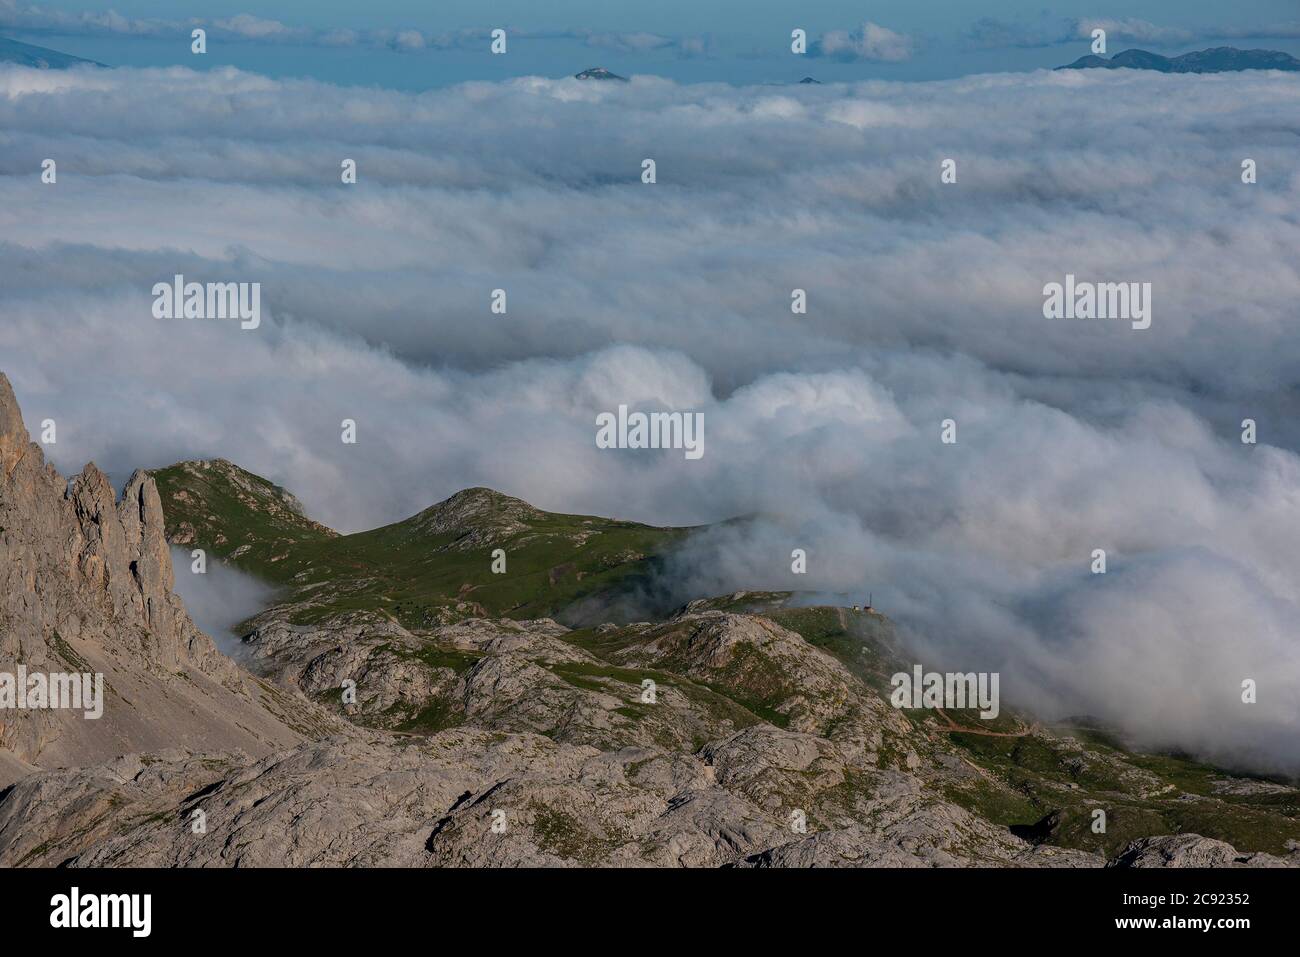 Mirando hacia abajo, desde la cima de una montaña, hasta la manta de nubes debajo. Foto de stock